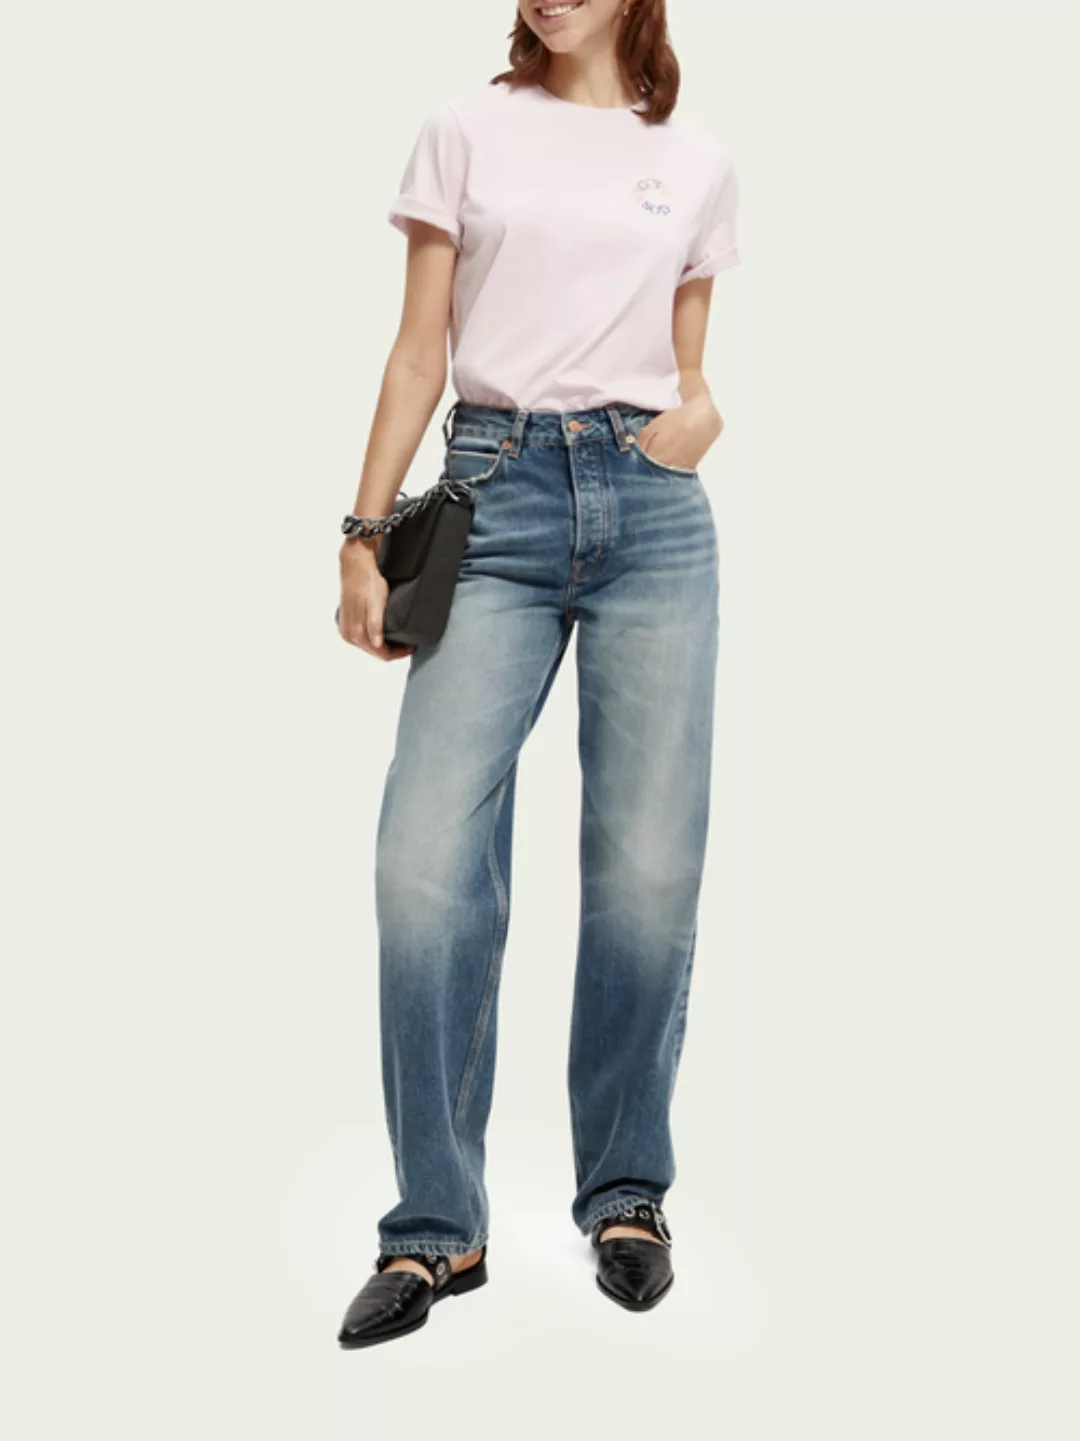 Scotch & Soda The Ripple Straight Leg Jeans aus Premium-Selvedge günstig online kaufen